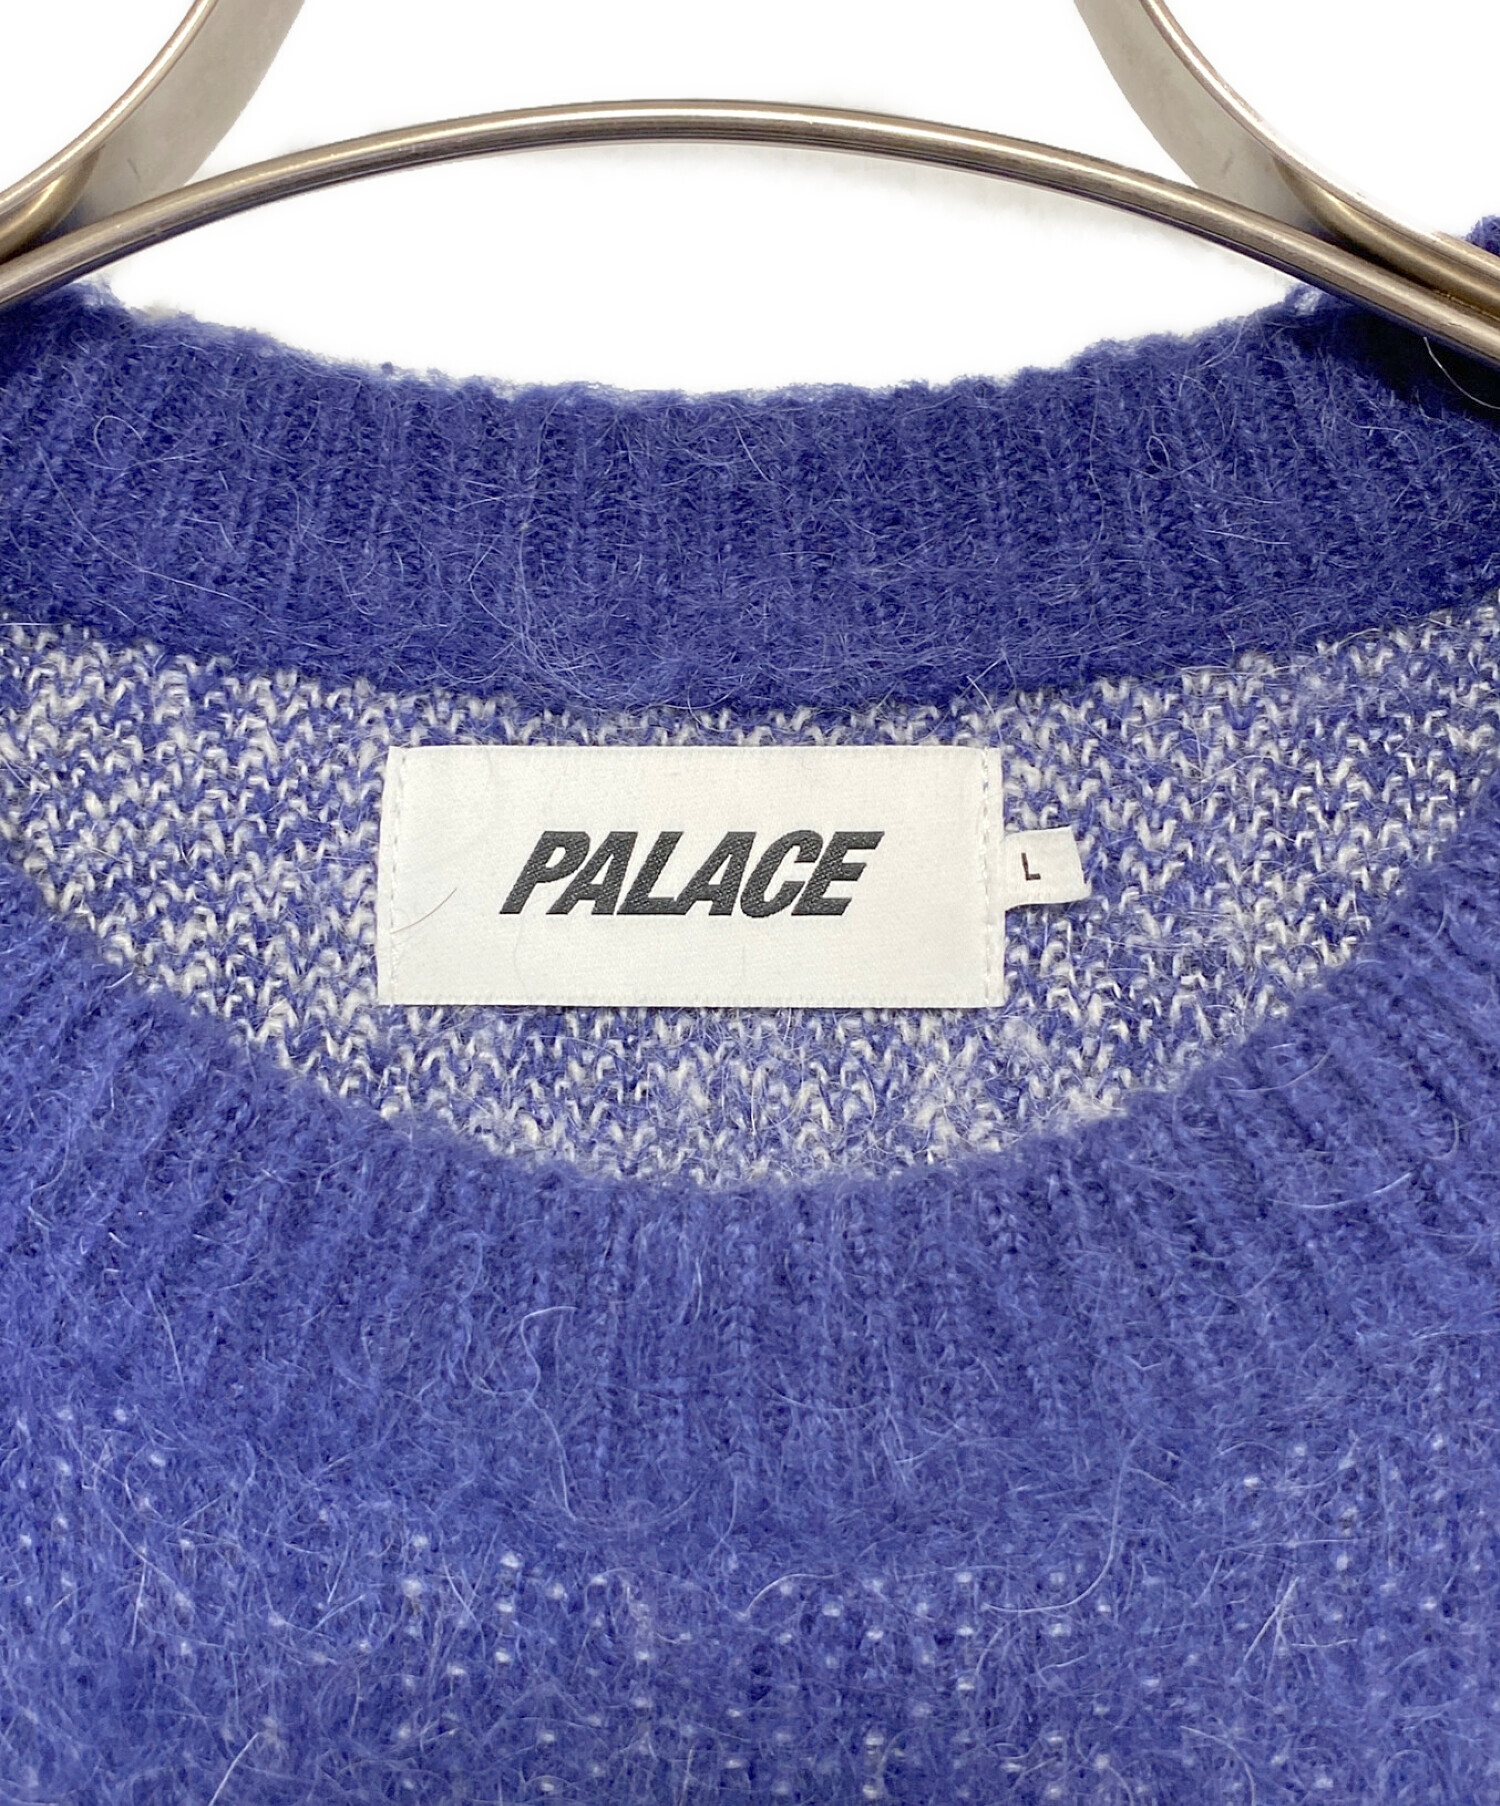 PALACE Ye Olde Palace Knit "Black"